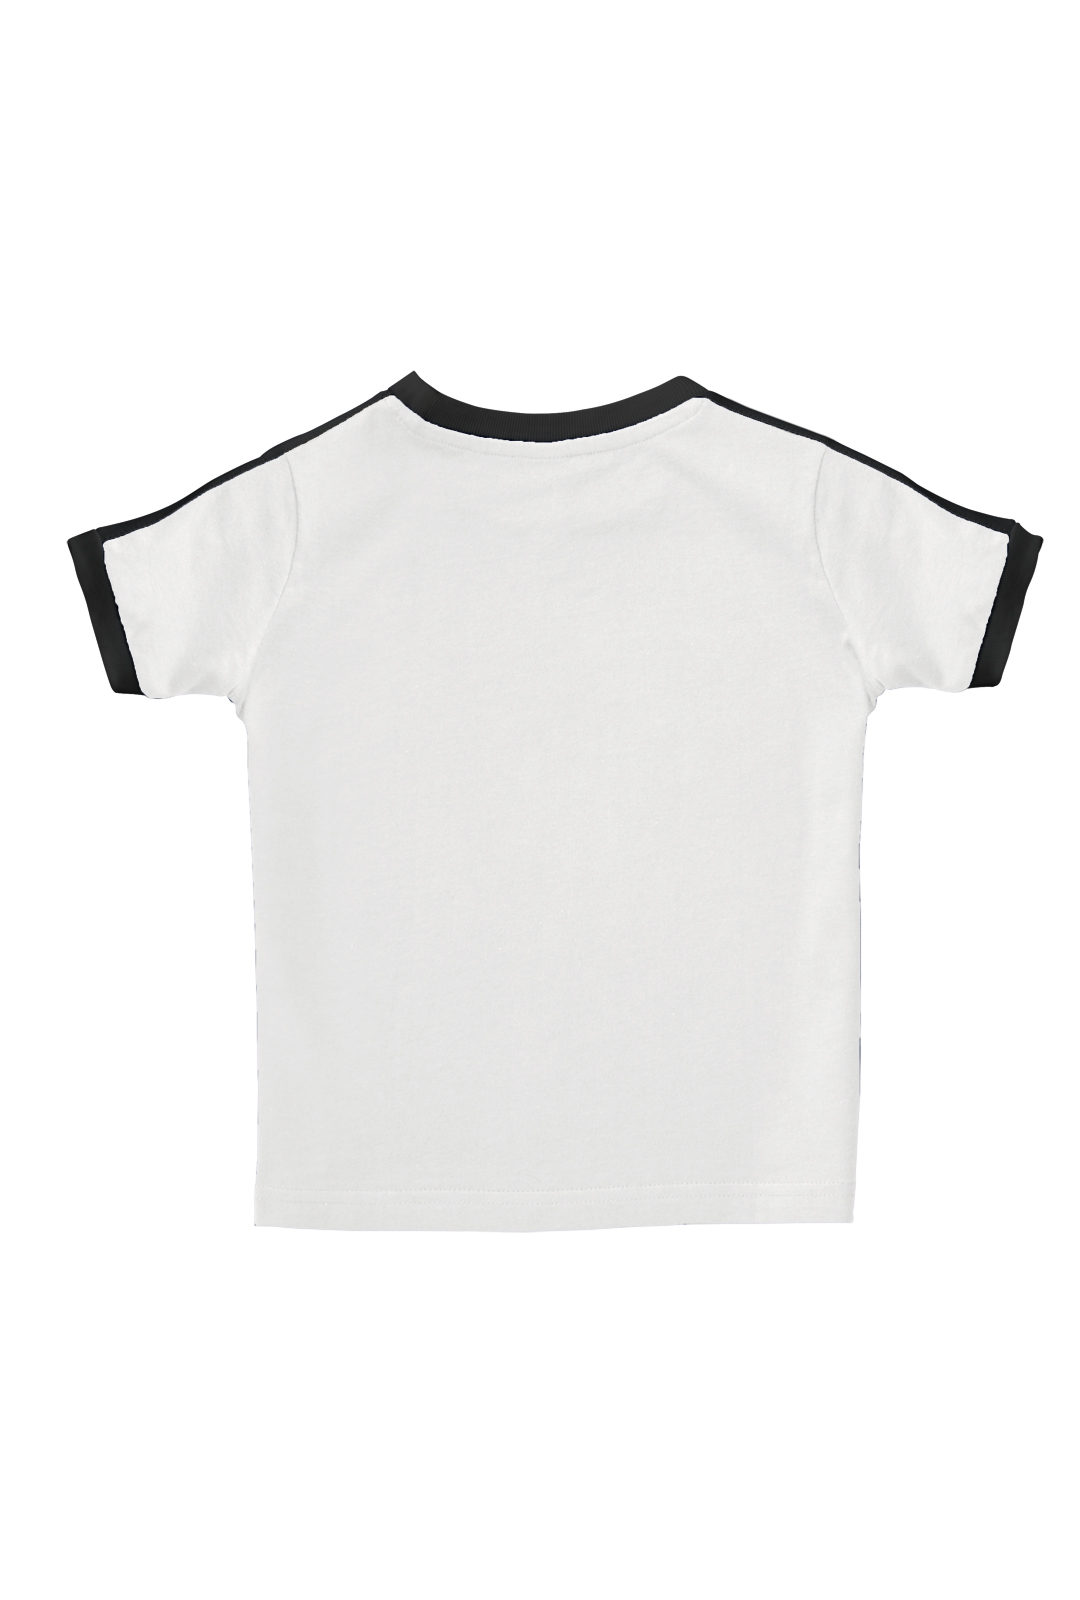 Toddler Retro Ringer T-Shirt - WHITE/BLACK - 3T - image 2 of 2